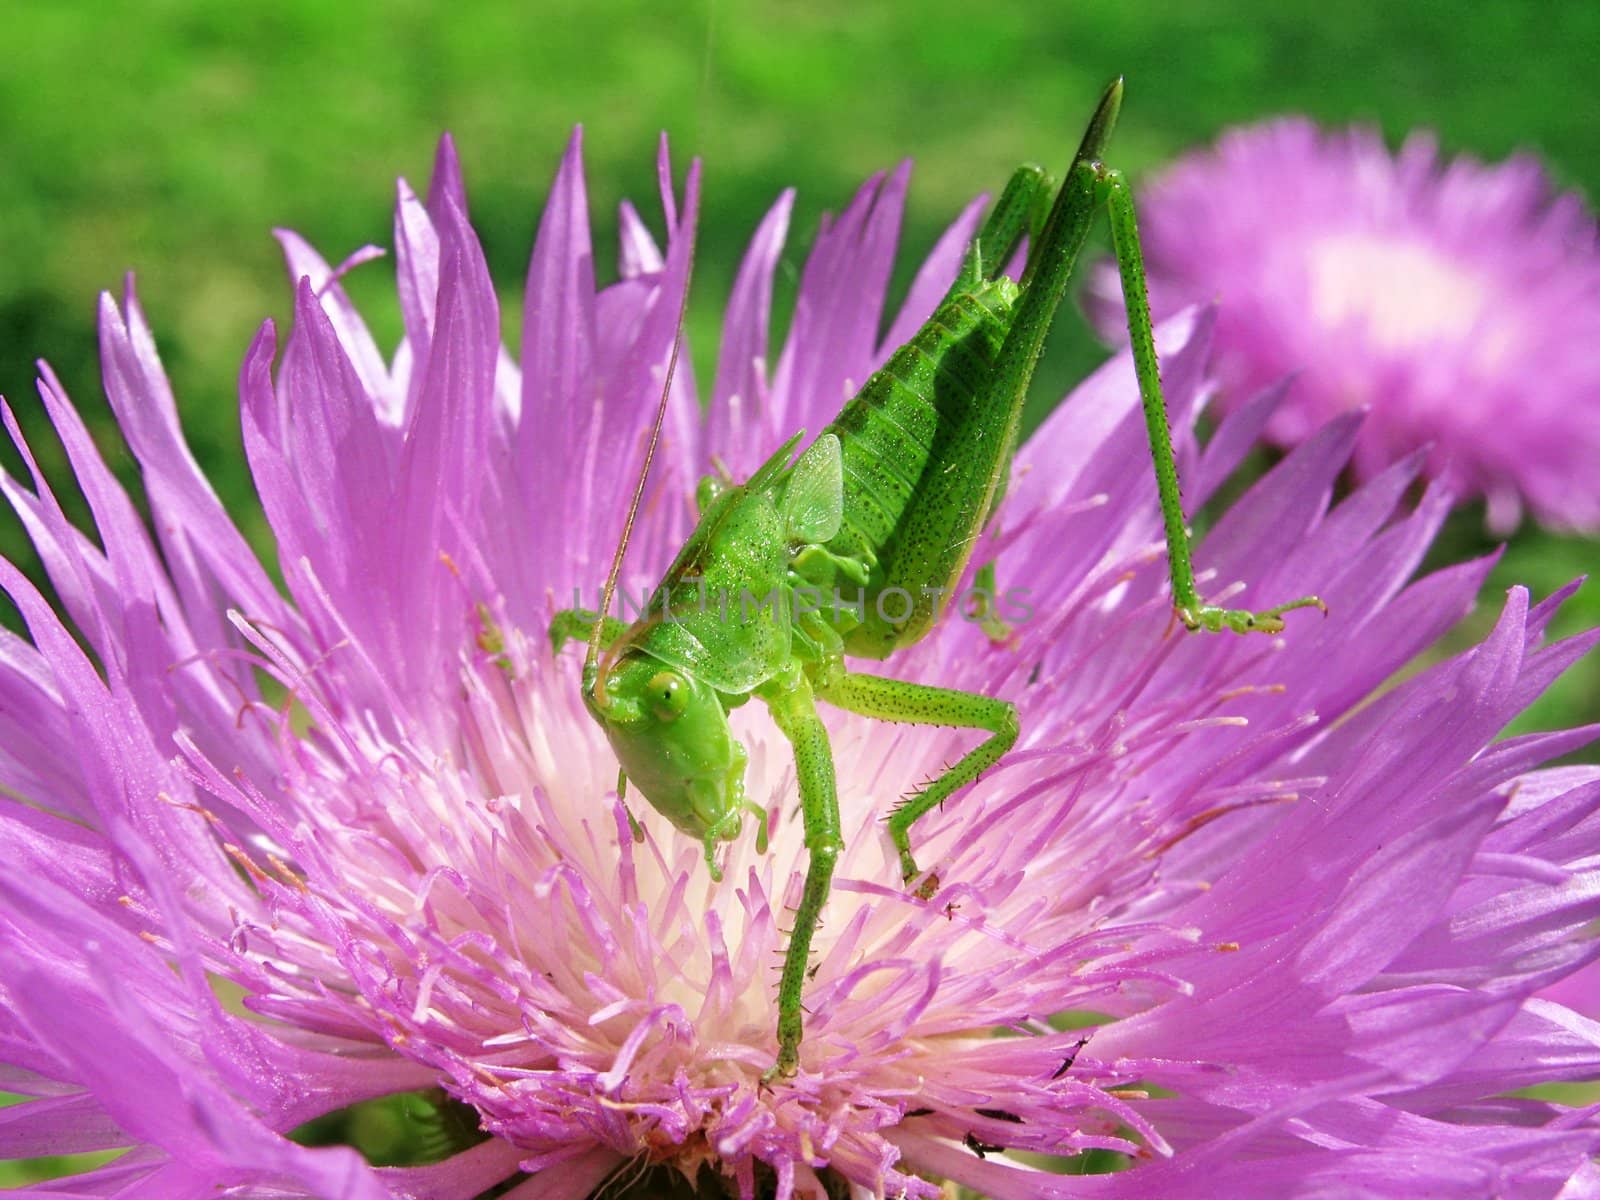 grasshopper sitting on cornflower